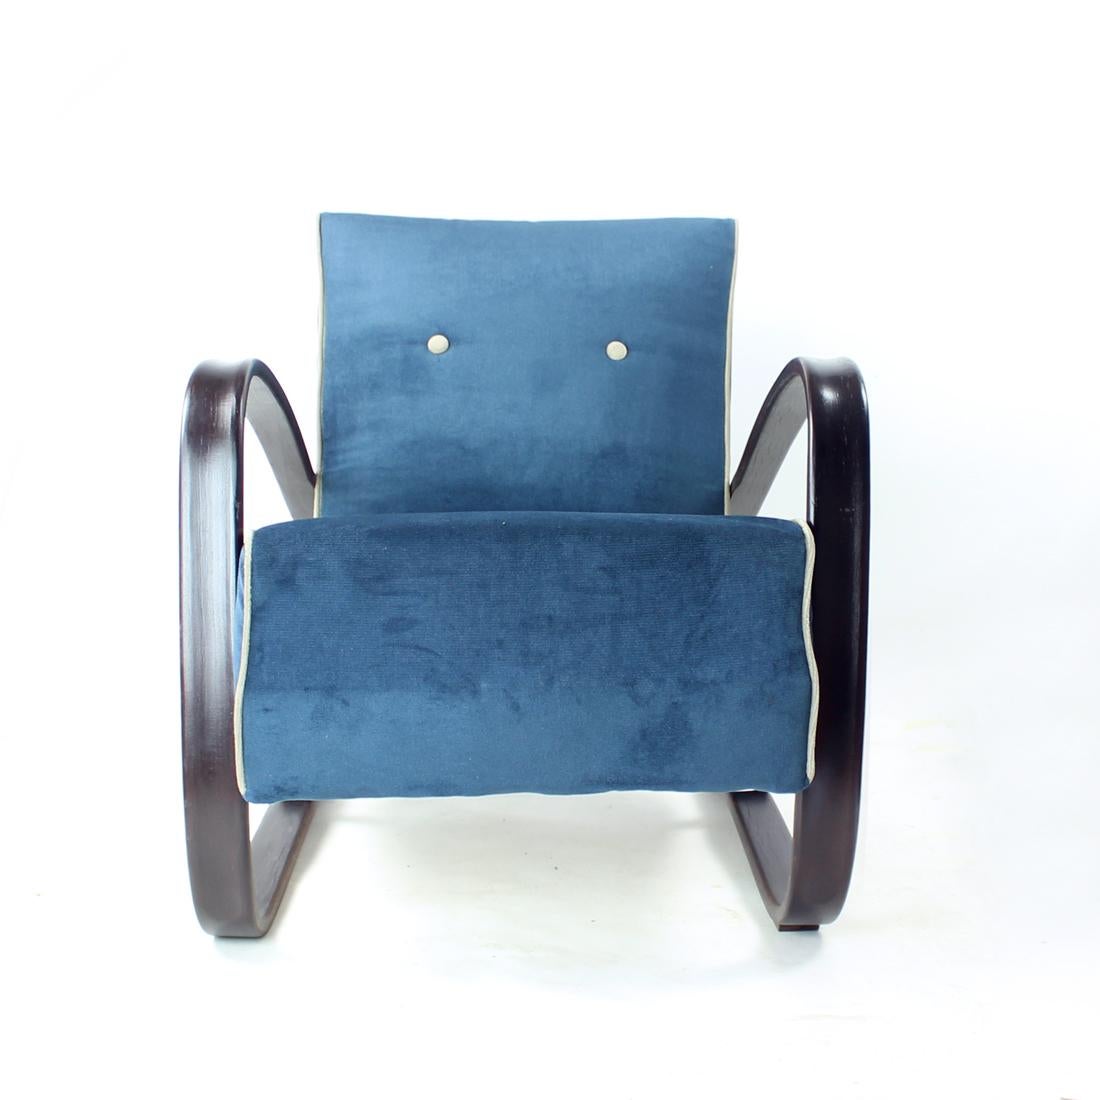 Fauteuil iconique conçu par Jindrich Halabala pour Up/One, en Tchécoslovaquie, dans les années 1920. La chaise est un modèle H-269. Ce modèle a une apparence très dynamique et abondante. Les accoudoirs joliment incurvés dans une couleur marron foncé